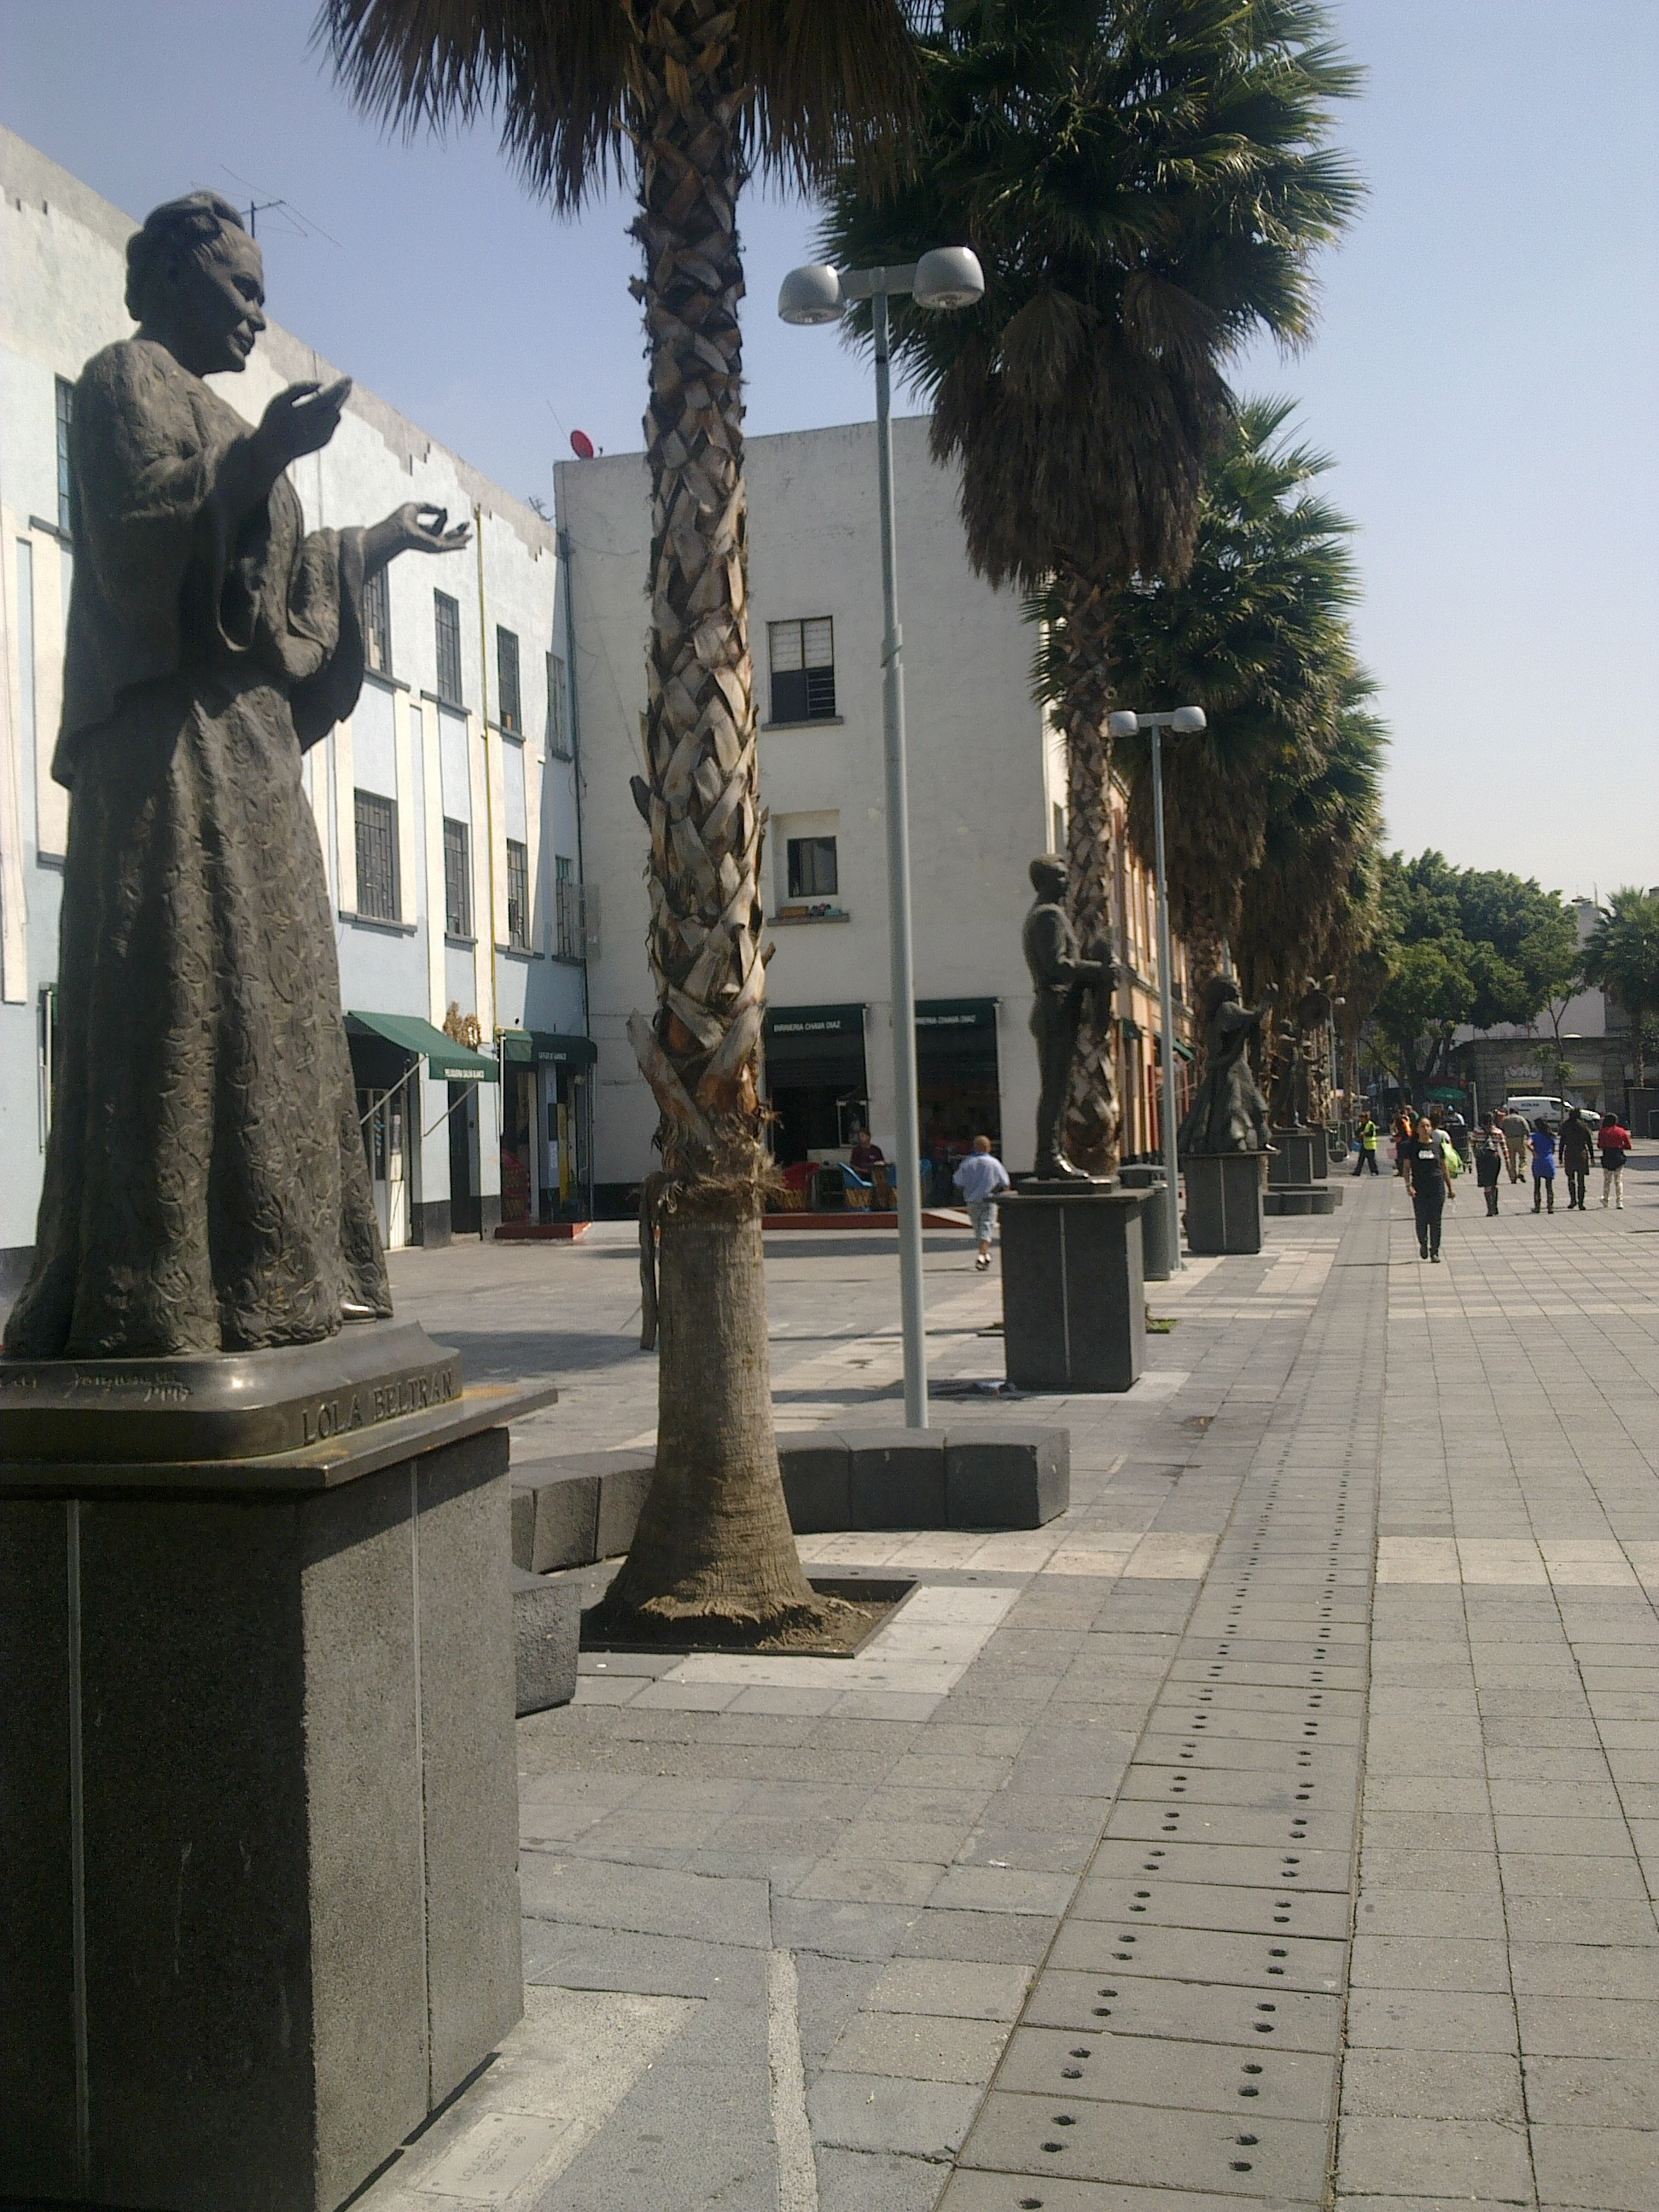 Mexico City (Distrito Federal)